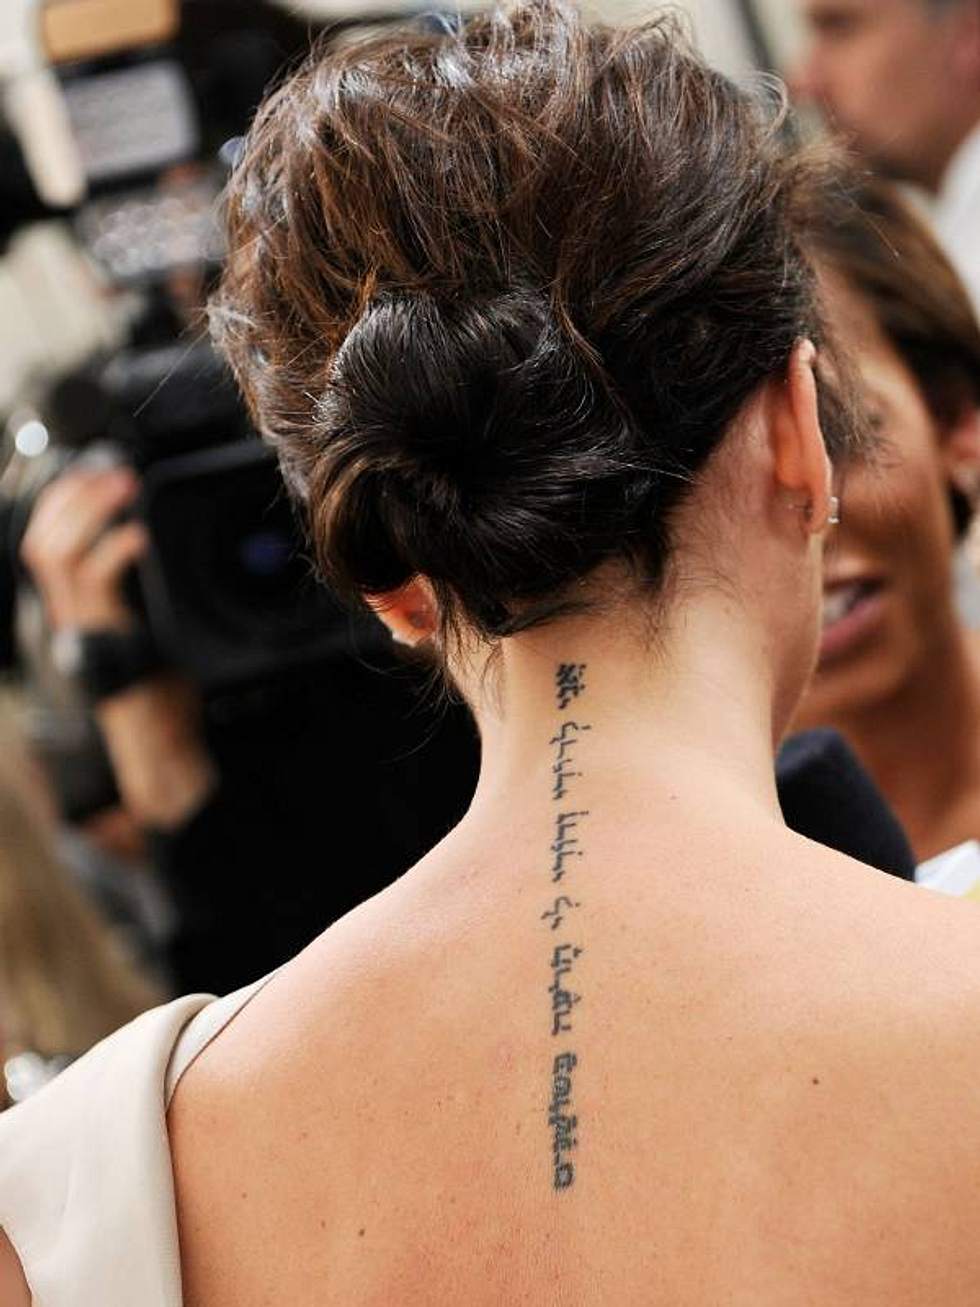 Татуировка Виктории Бекхэм на спине